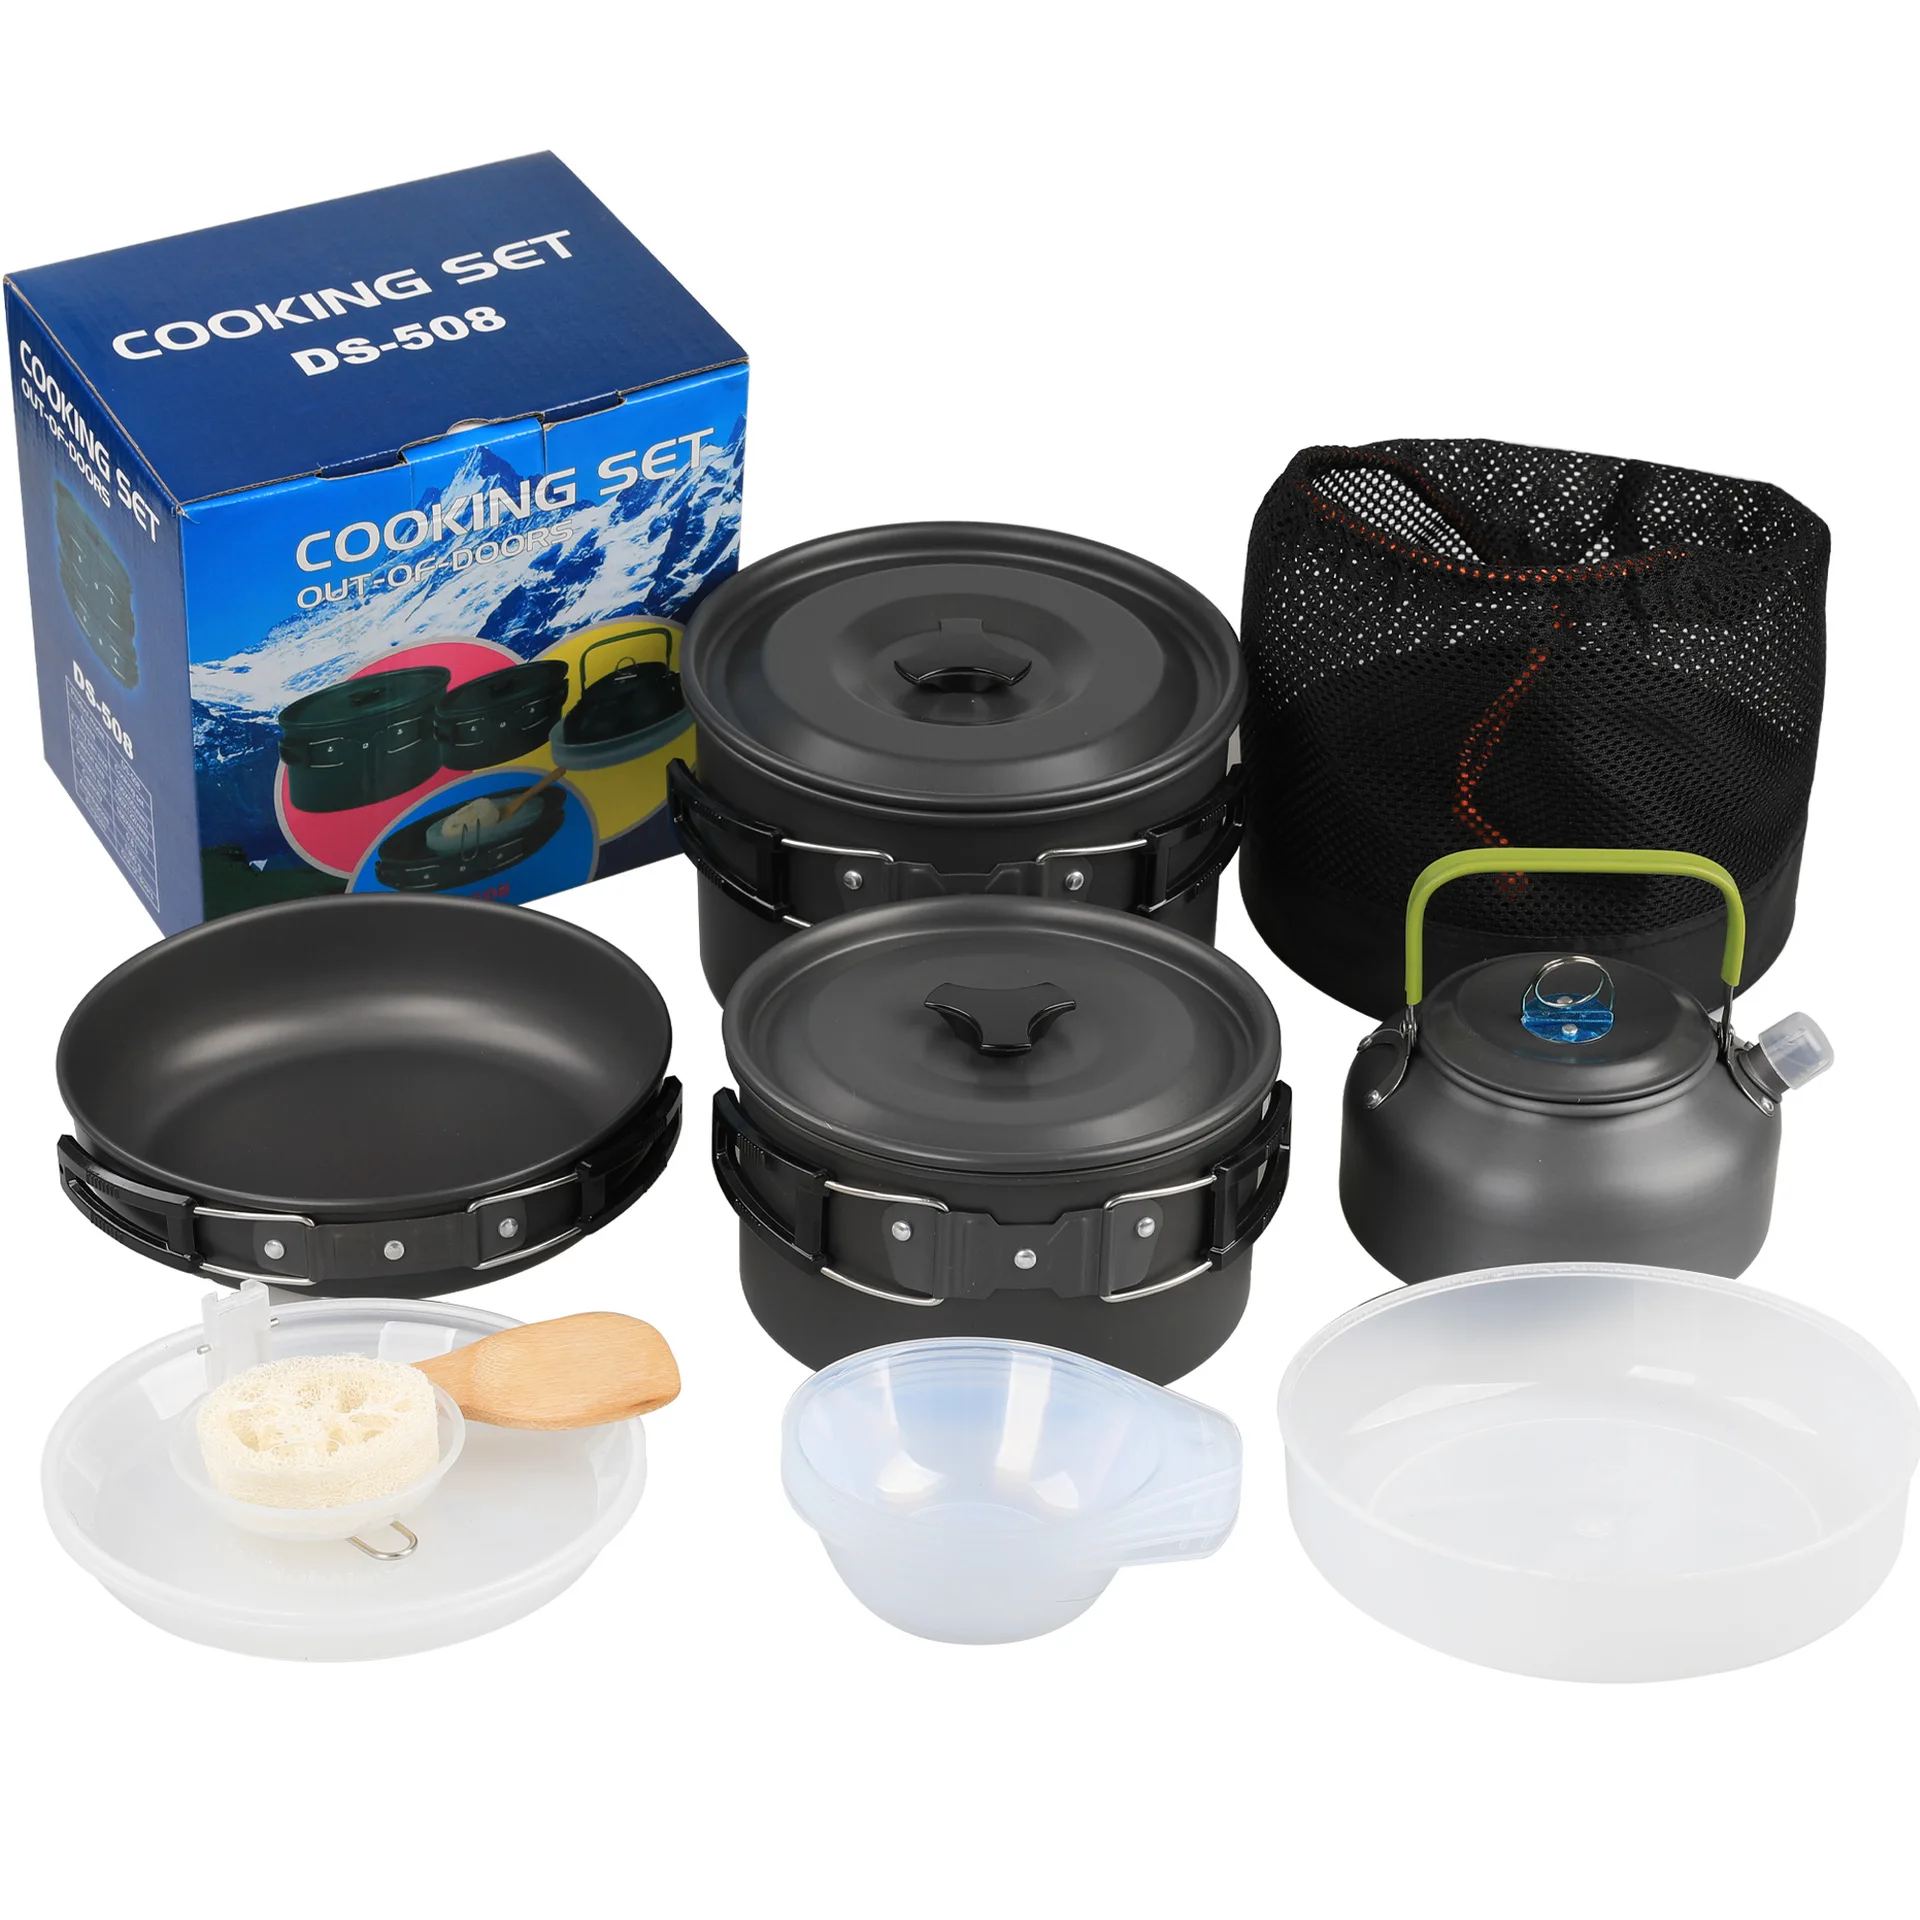 Açık Kamp Tencere Seti DS-508 4-5 Kişi Taşınabilir Piknik Pot Ve çaydanlık seti su ısıtıcısı